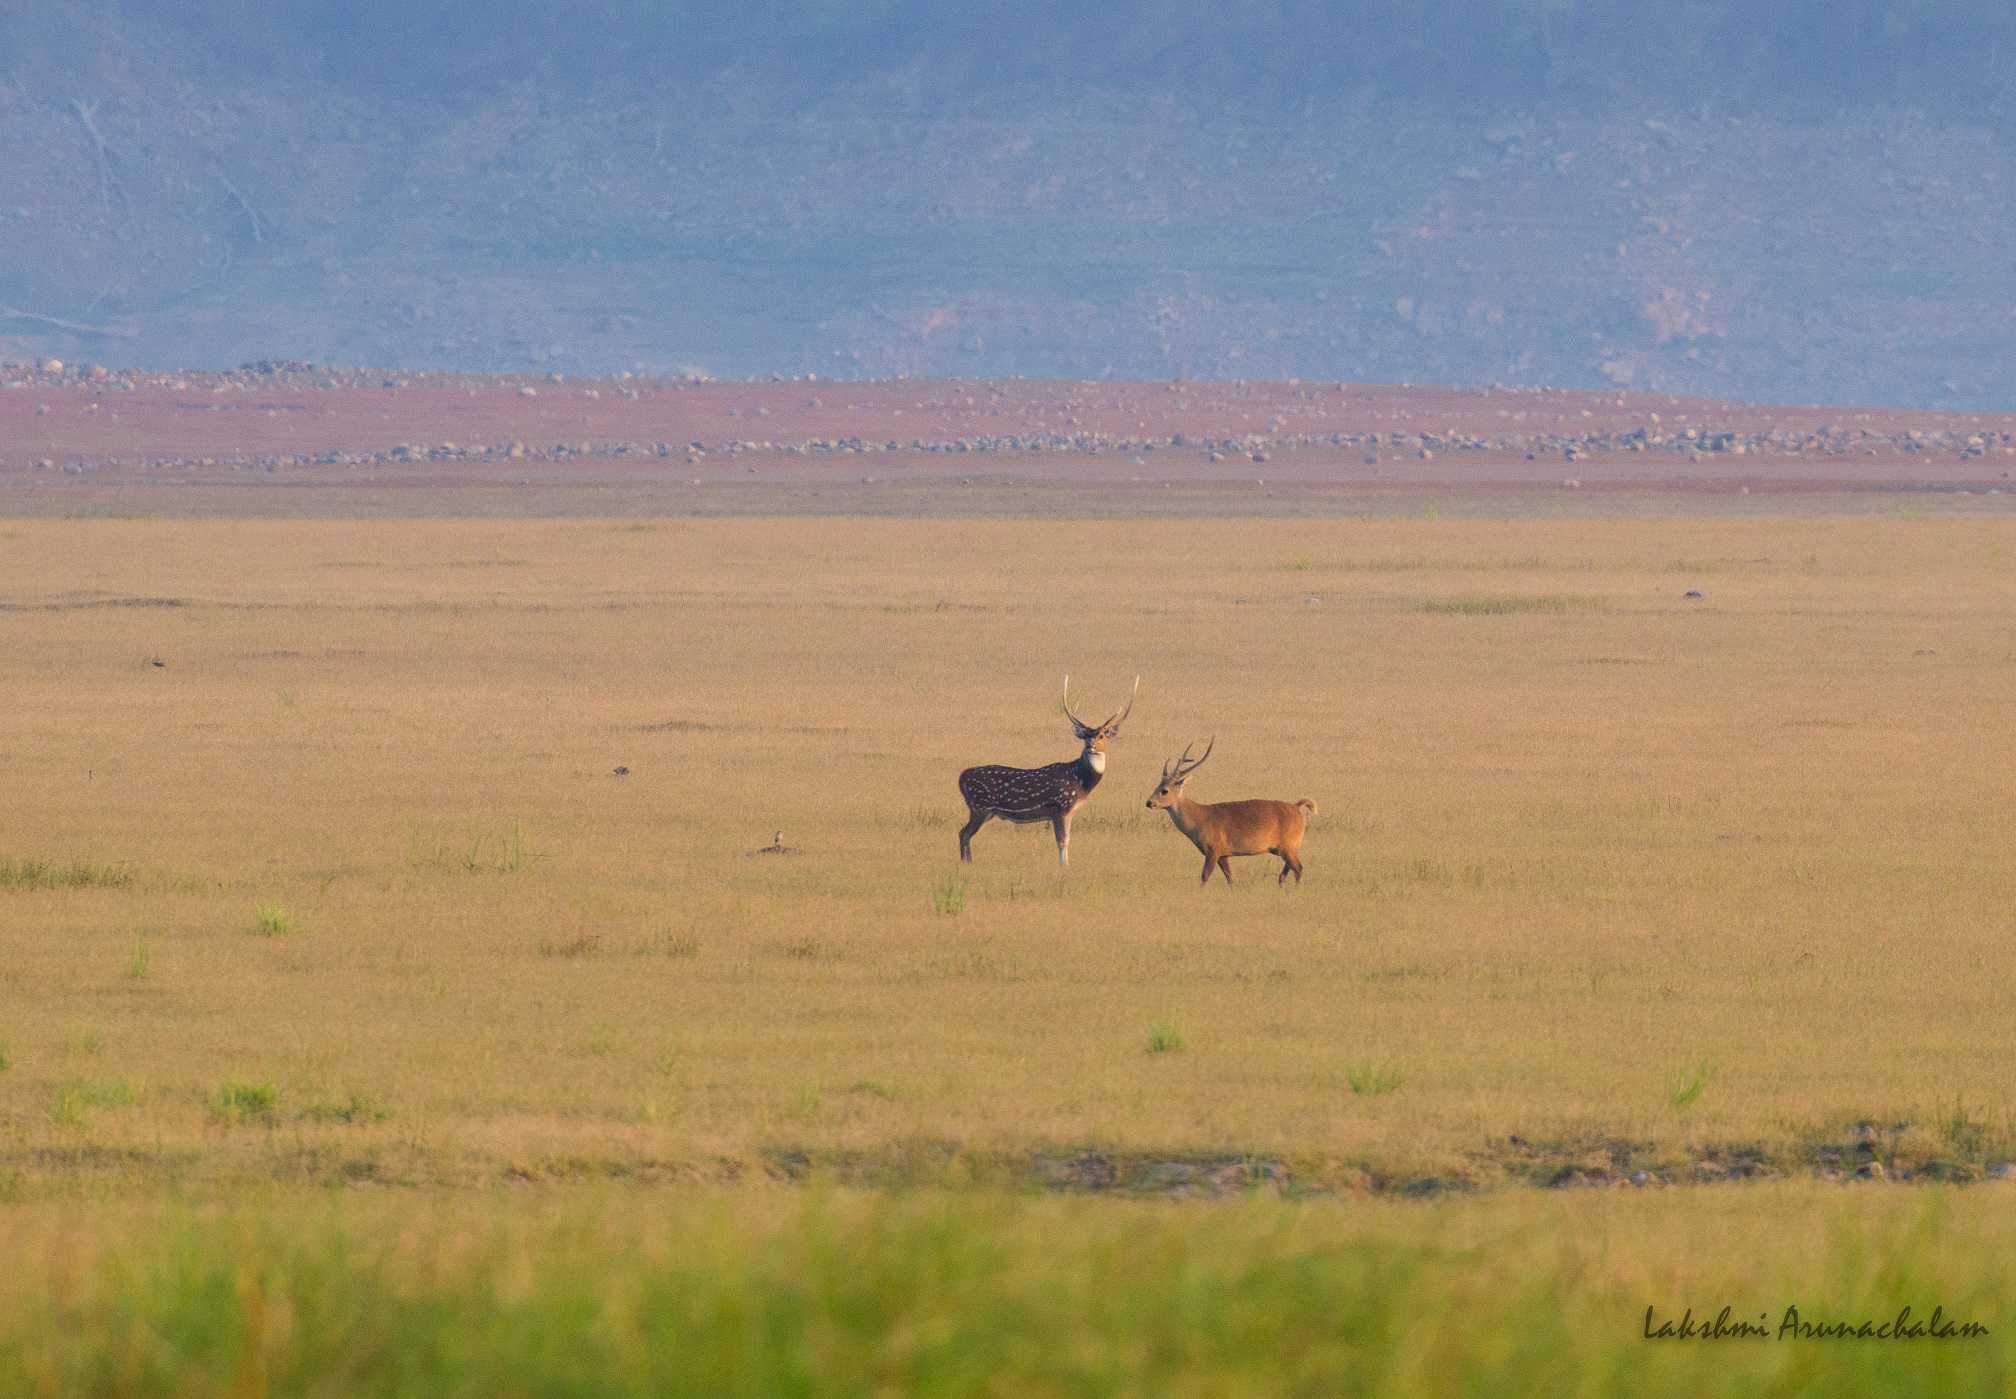 Deer-scape, Dhikala grasslands